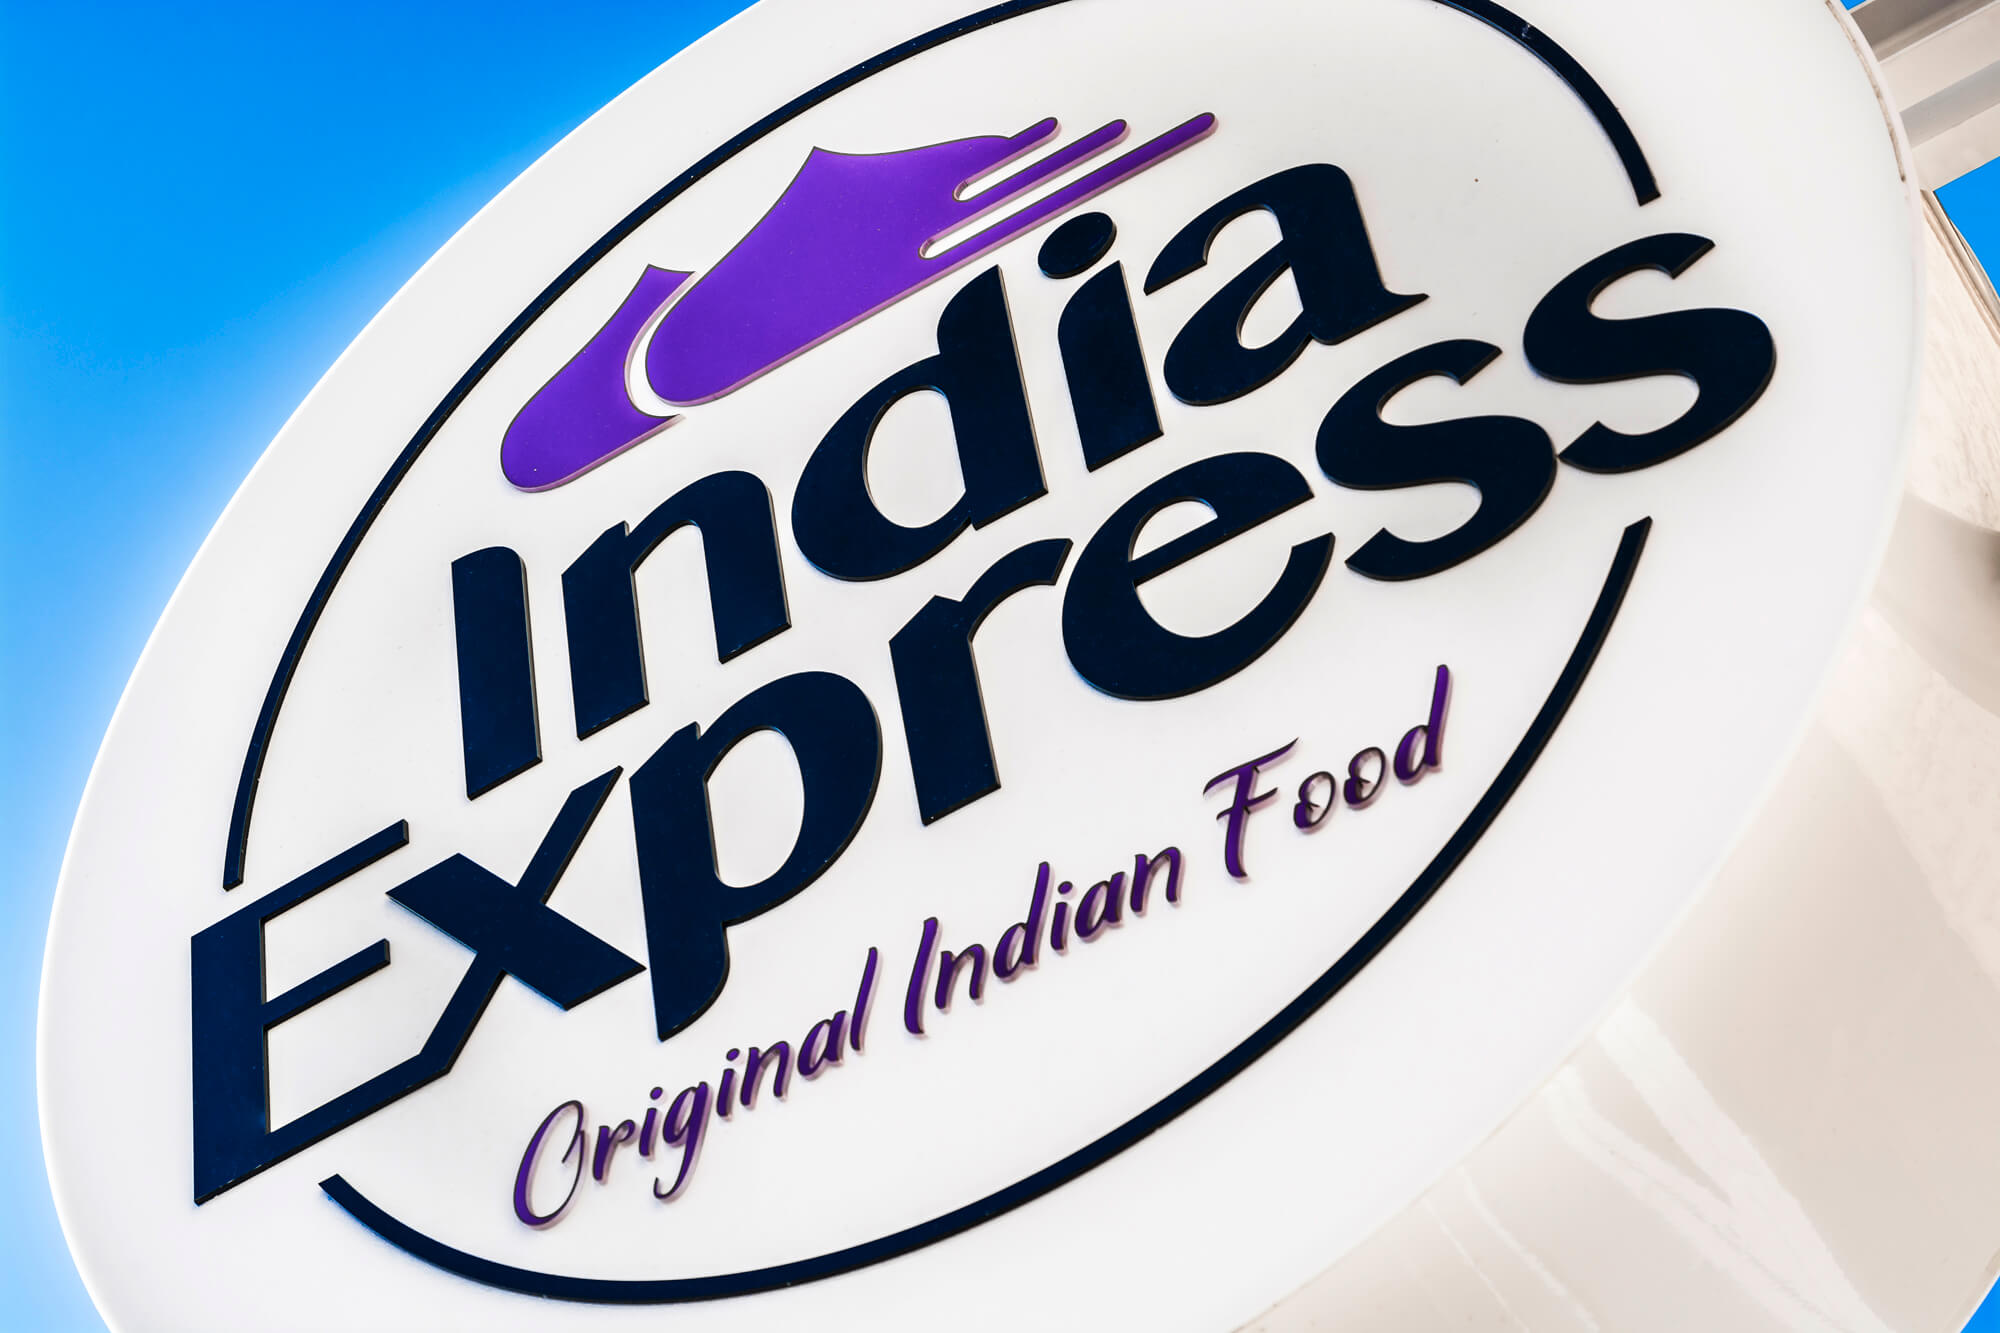 India Express - India Express - semafor reklamowy firmy z logiem zawieszony obok wejścia